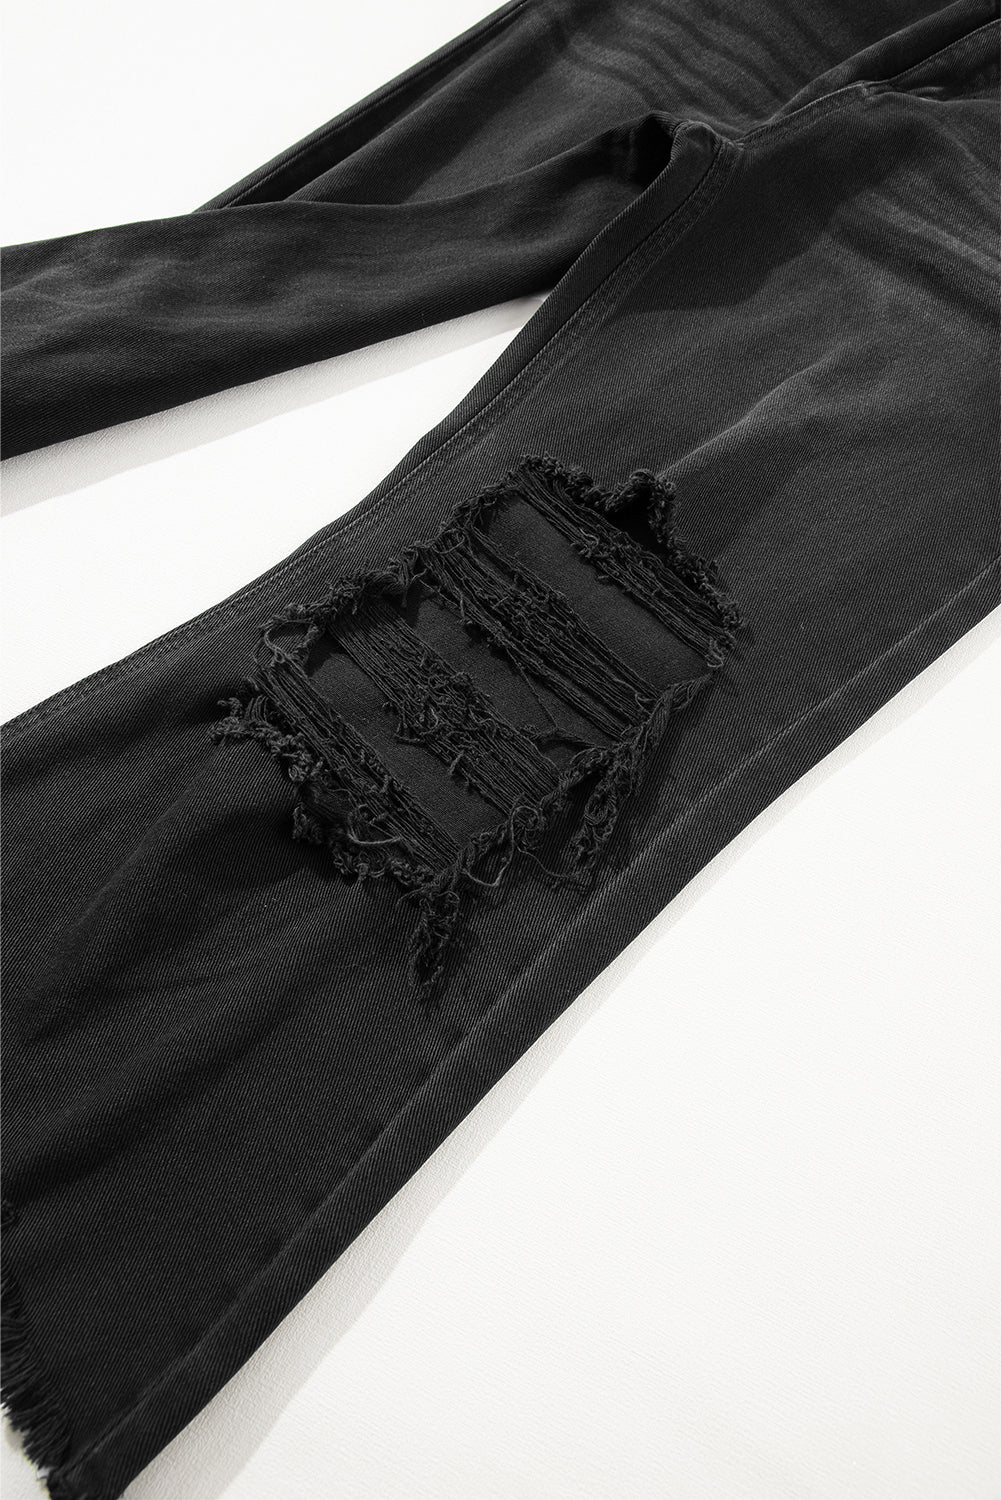 Crne izdubljene crne široke traperice visokog struka